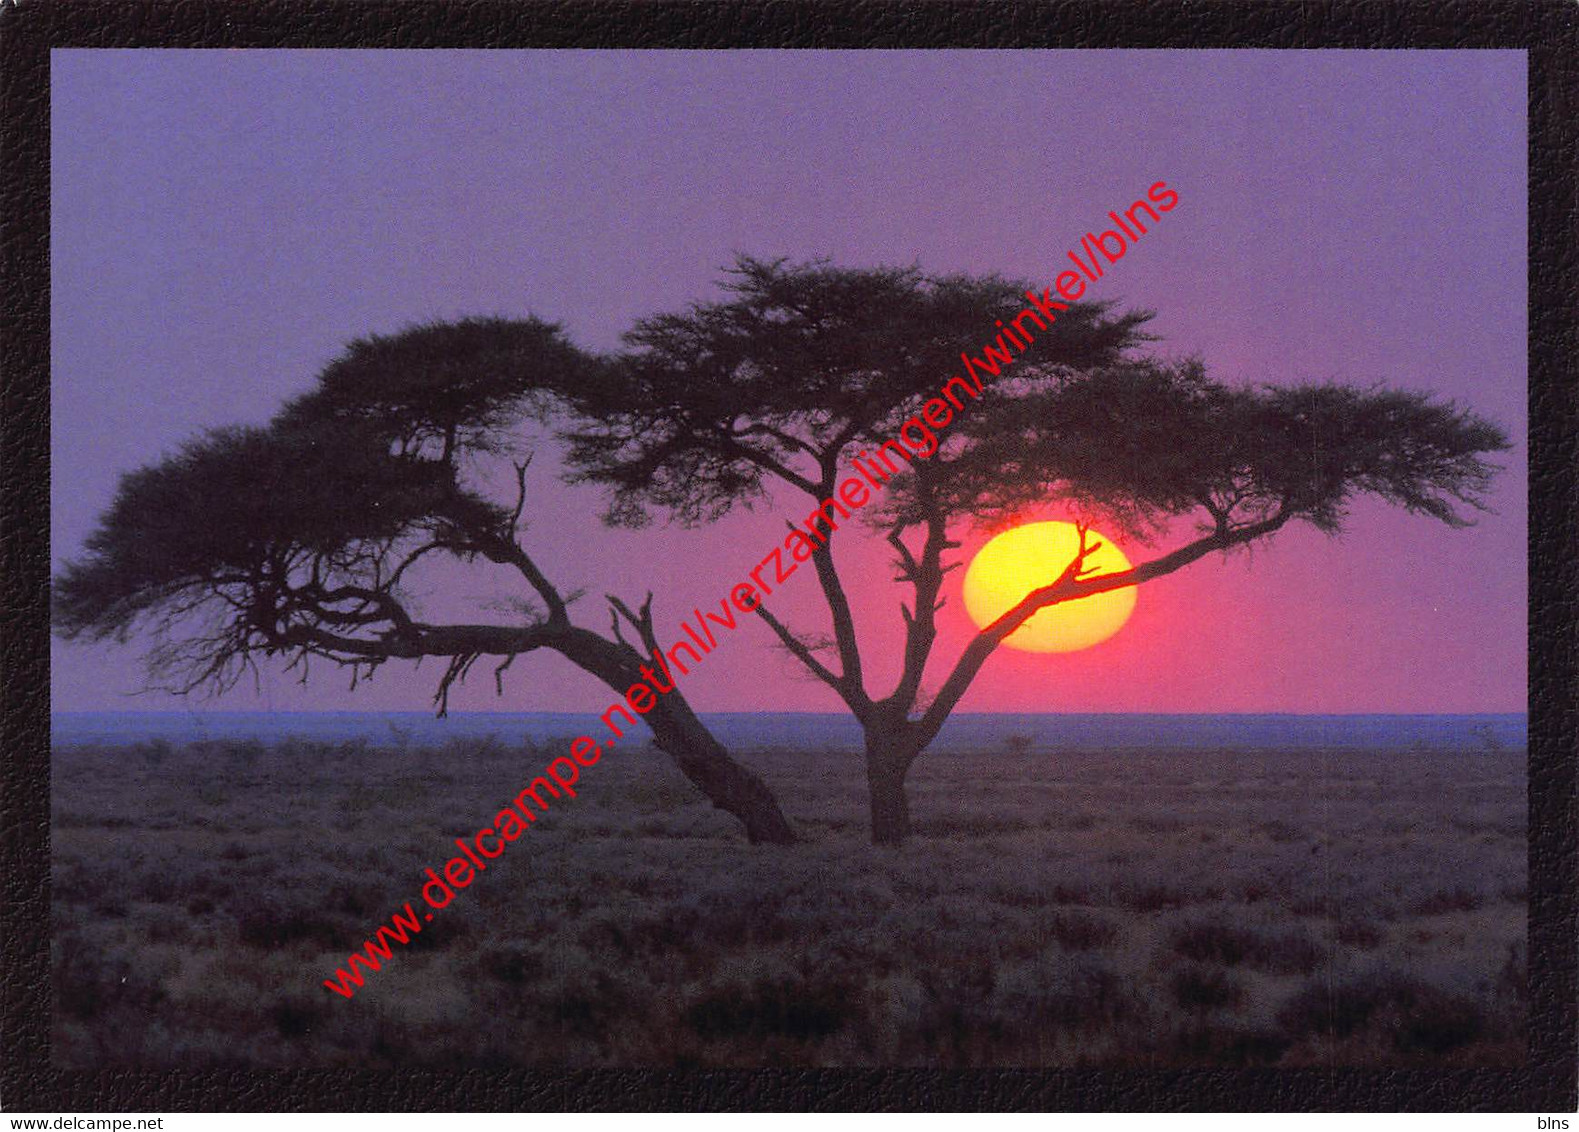 Namibia - Lone Acacia Tree At Sunrise In Etosha - Namibia